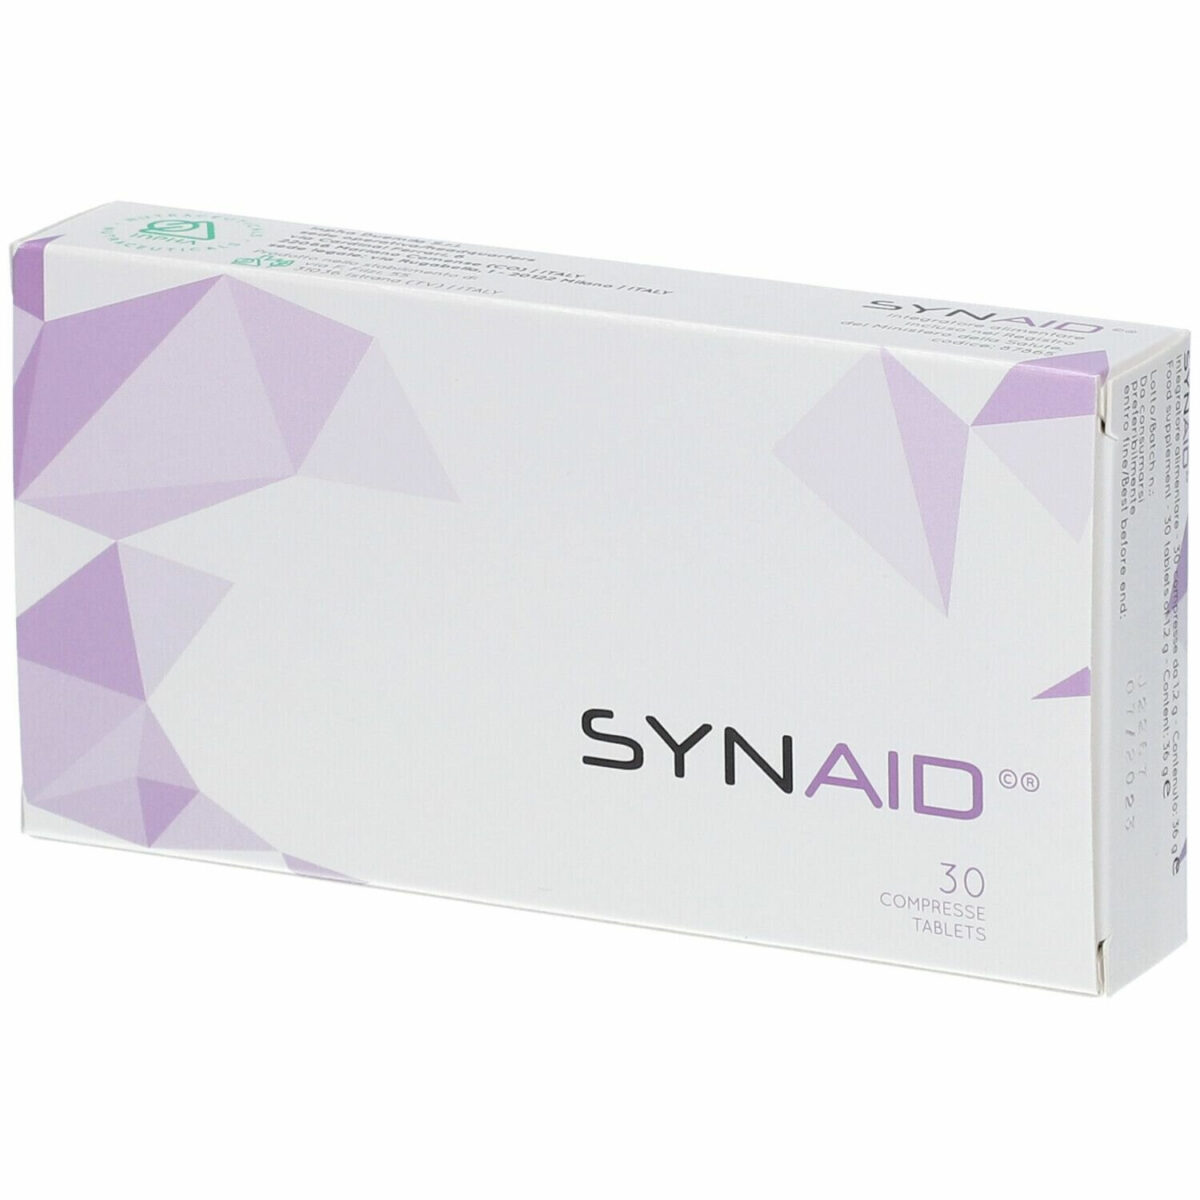 Synaid 30 tableta